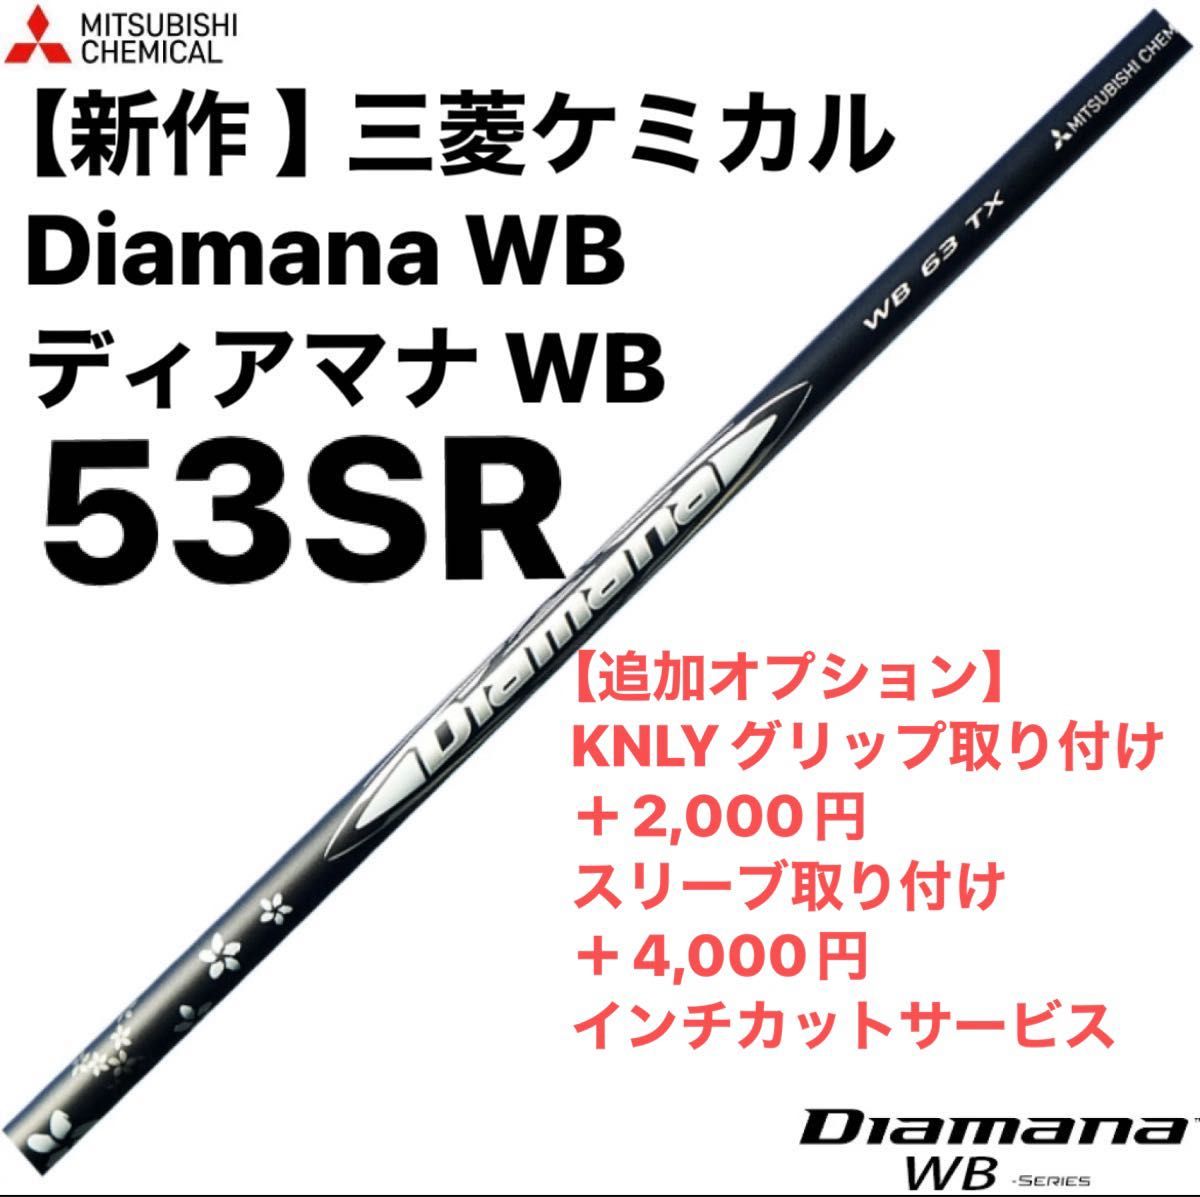 【新作 】三菱ケミカル Diamana WB ディアマナ WB  53SR  シャフト単品